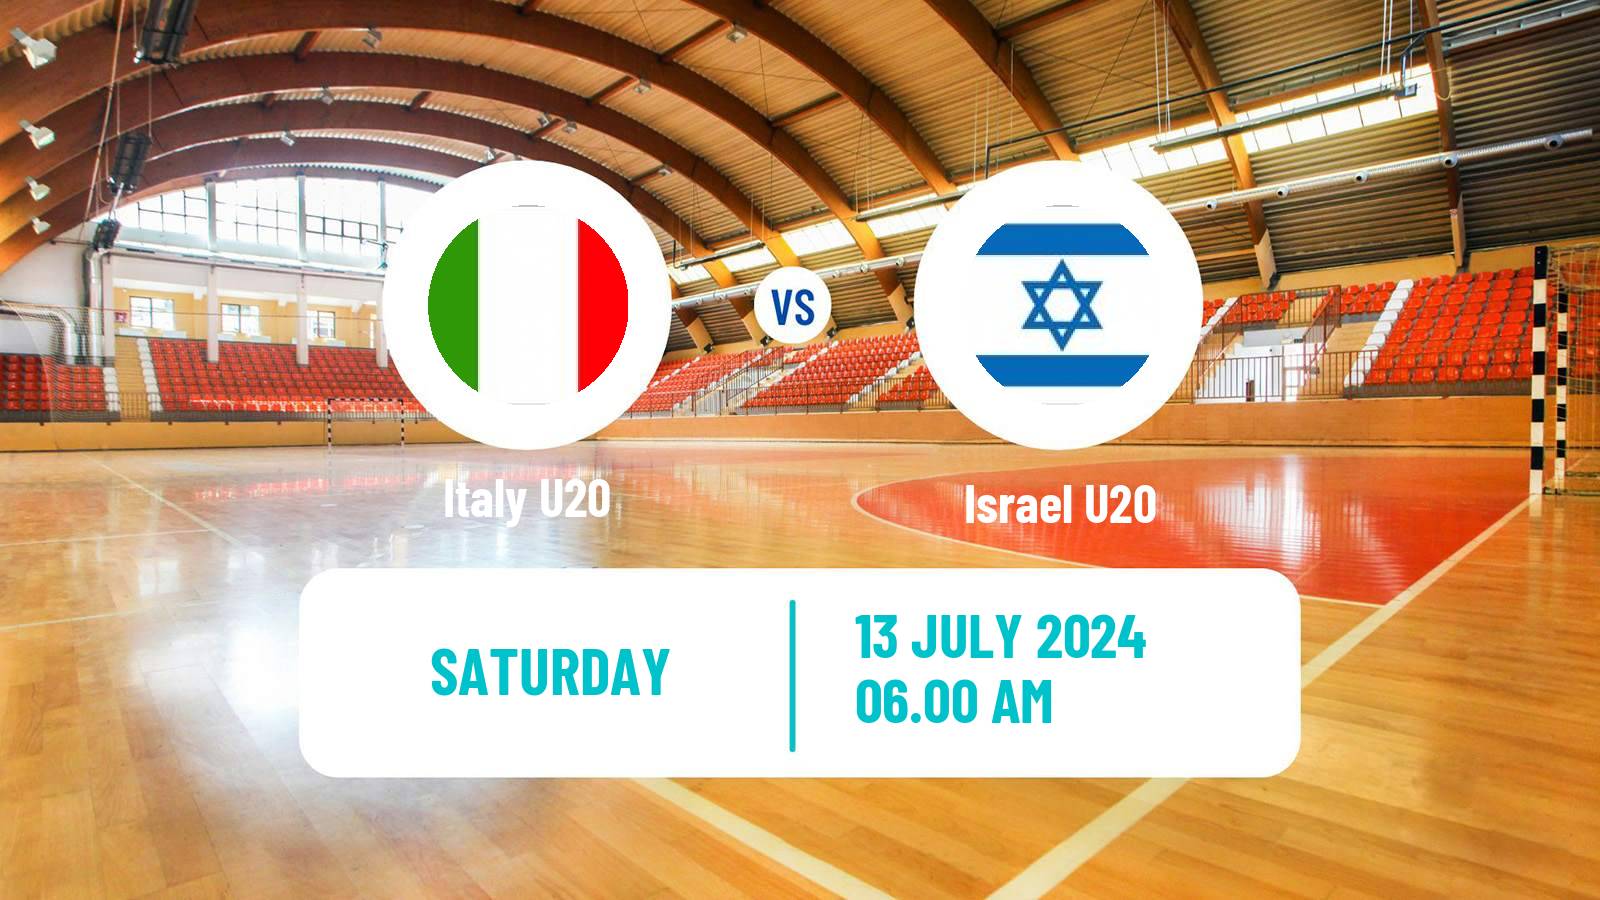 Handball European Championship U20 Handball Italy U20 - Israel U20